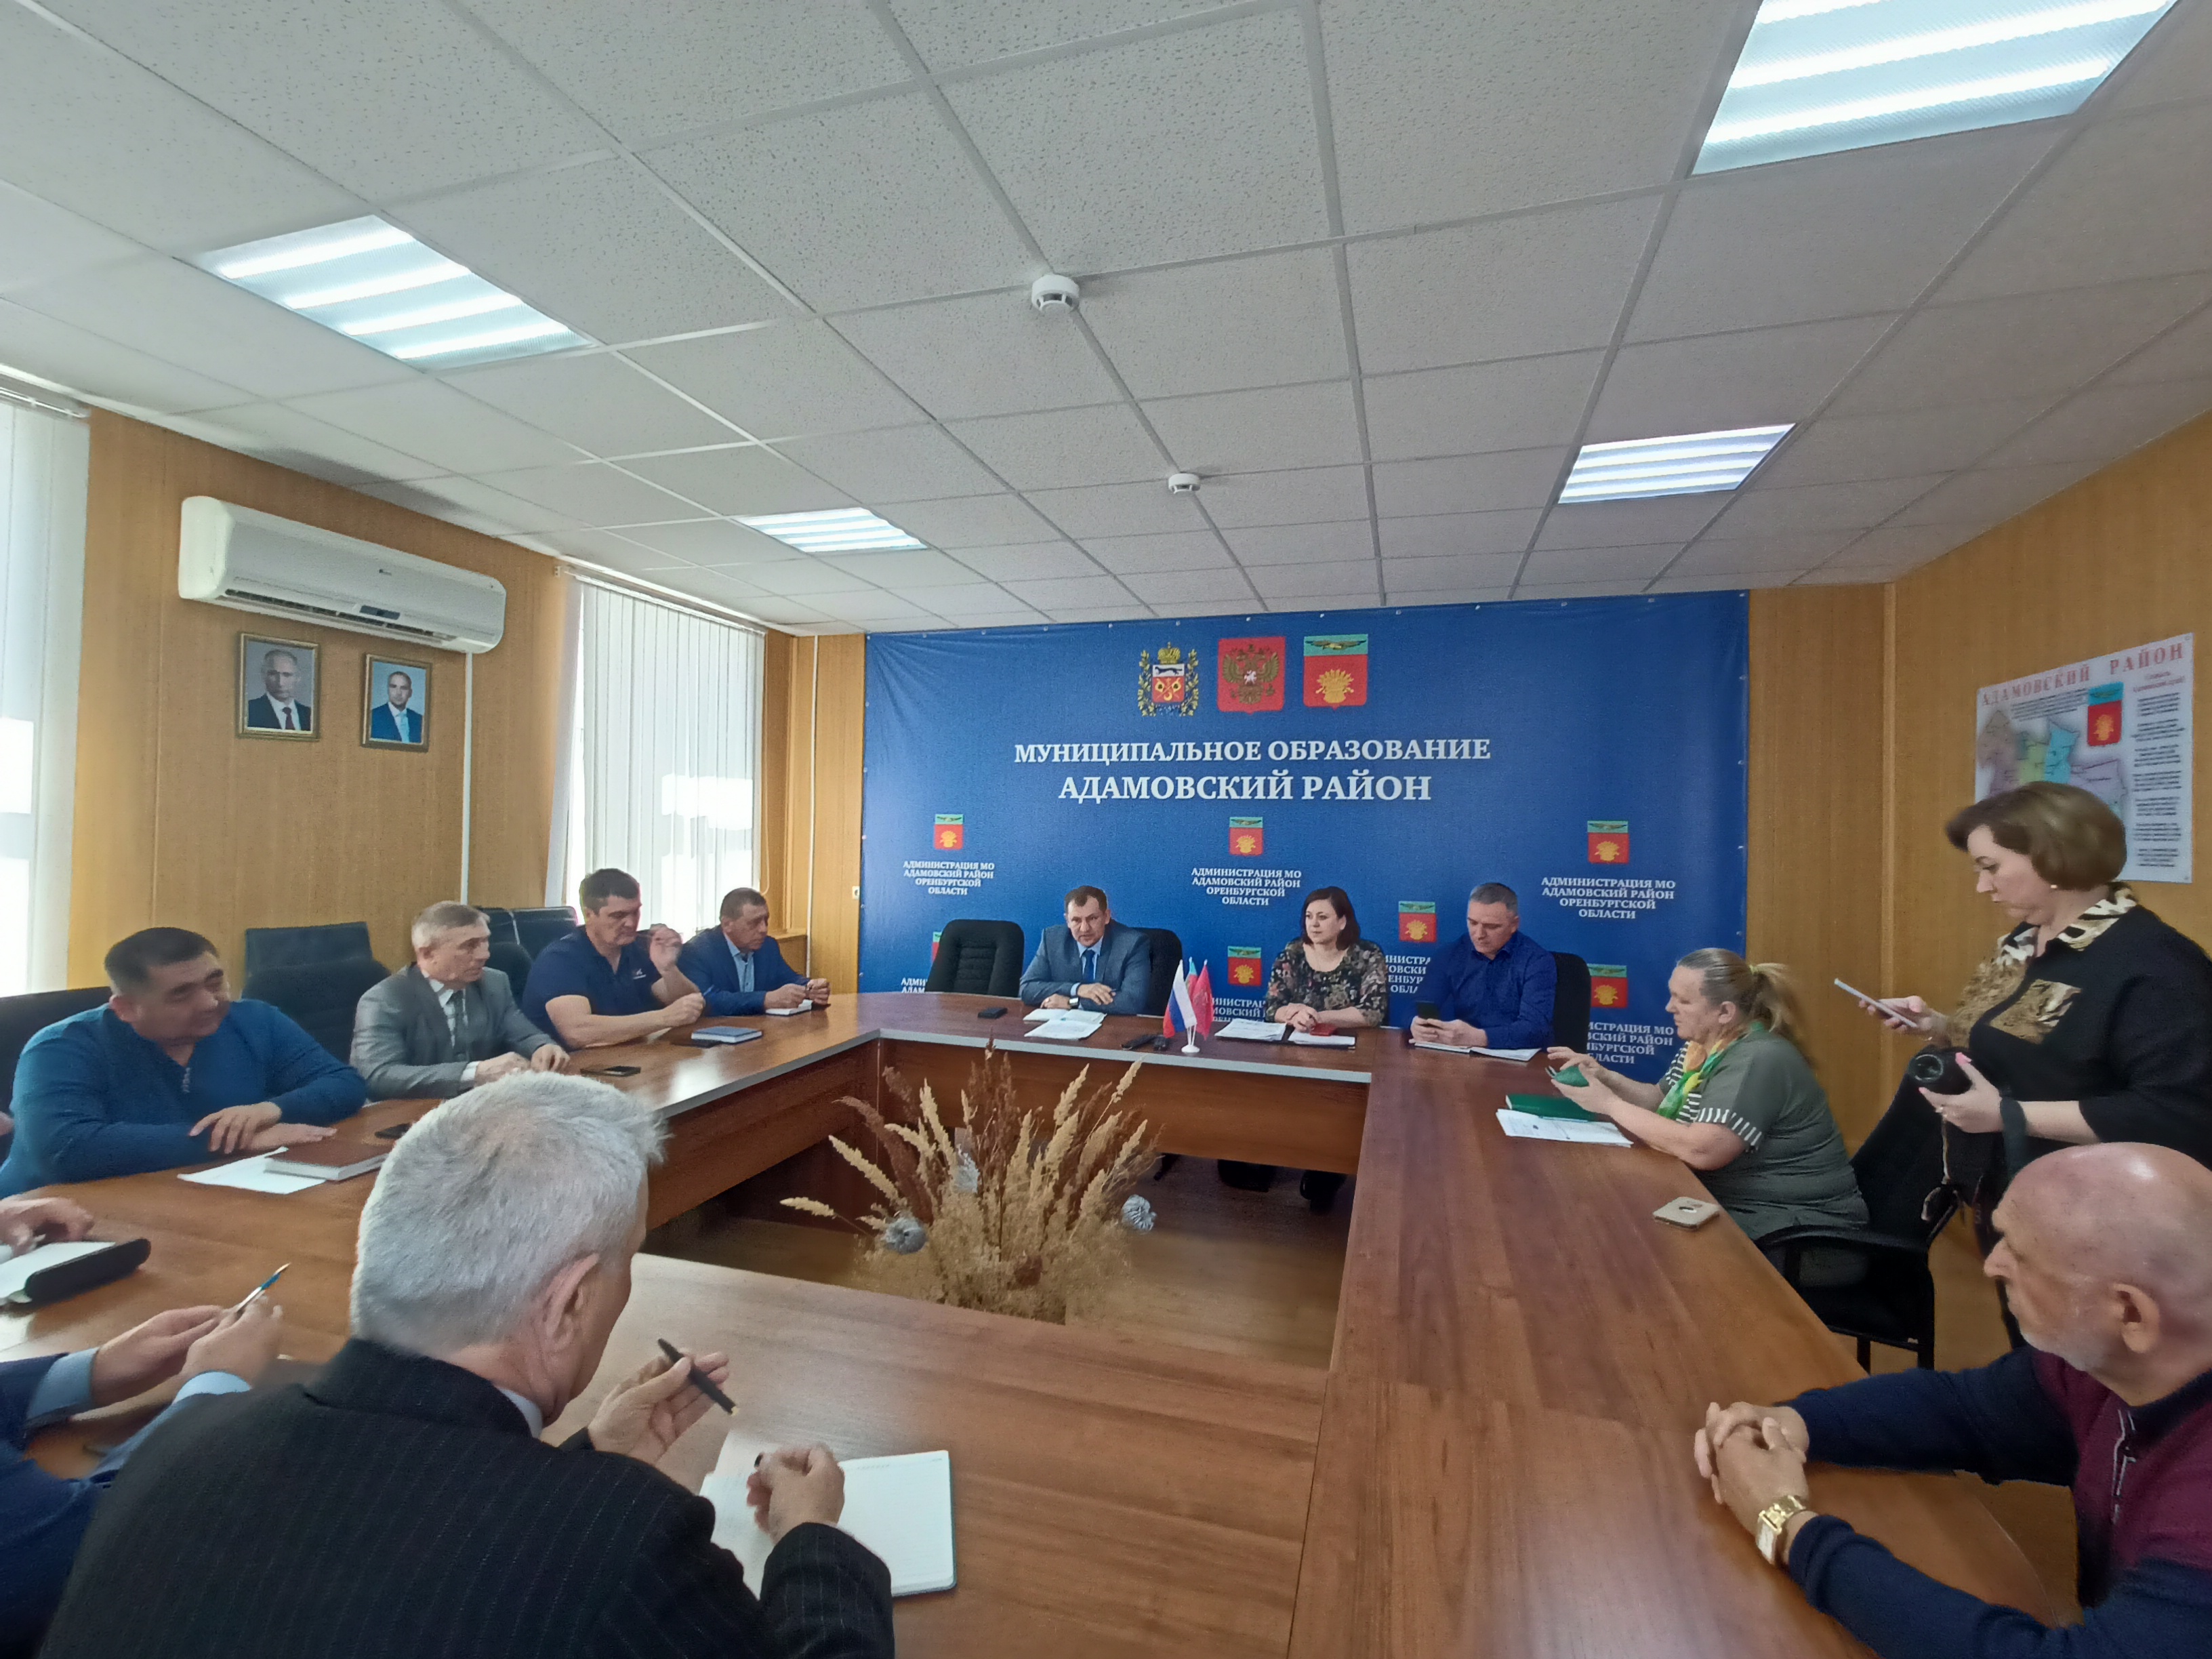 Встреча в Адамовском районе  показала высокий уровень заинтересованности района и муниципалитетов в реализации региональной программы.